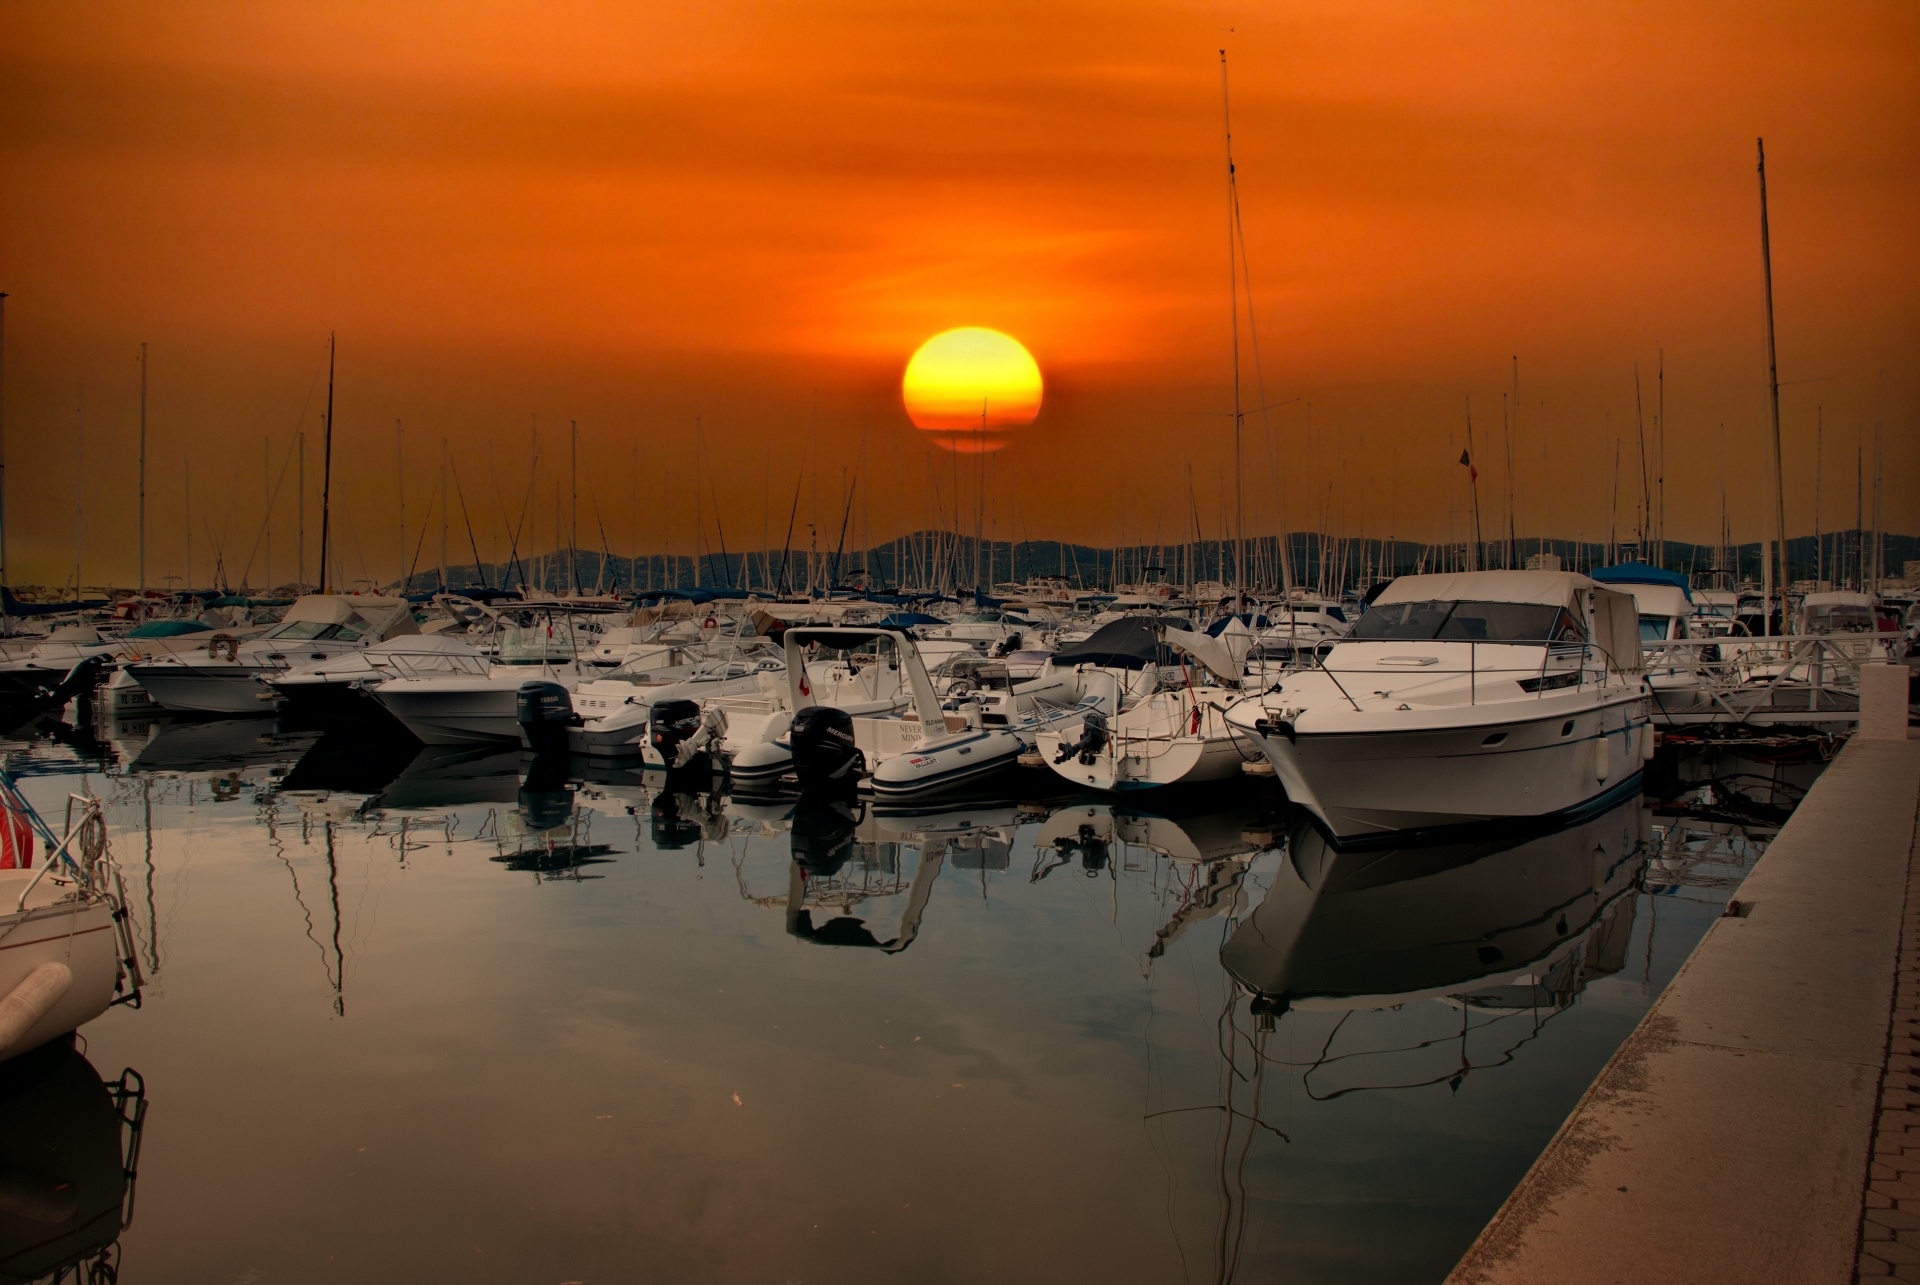 Marina, Sunset